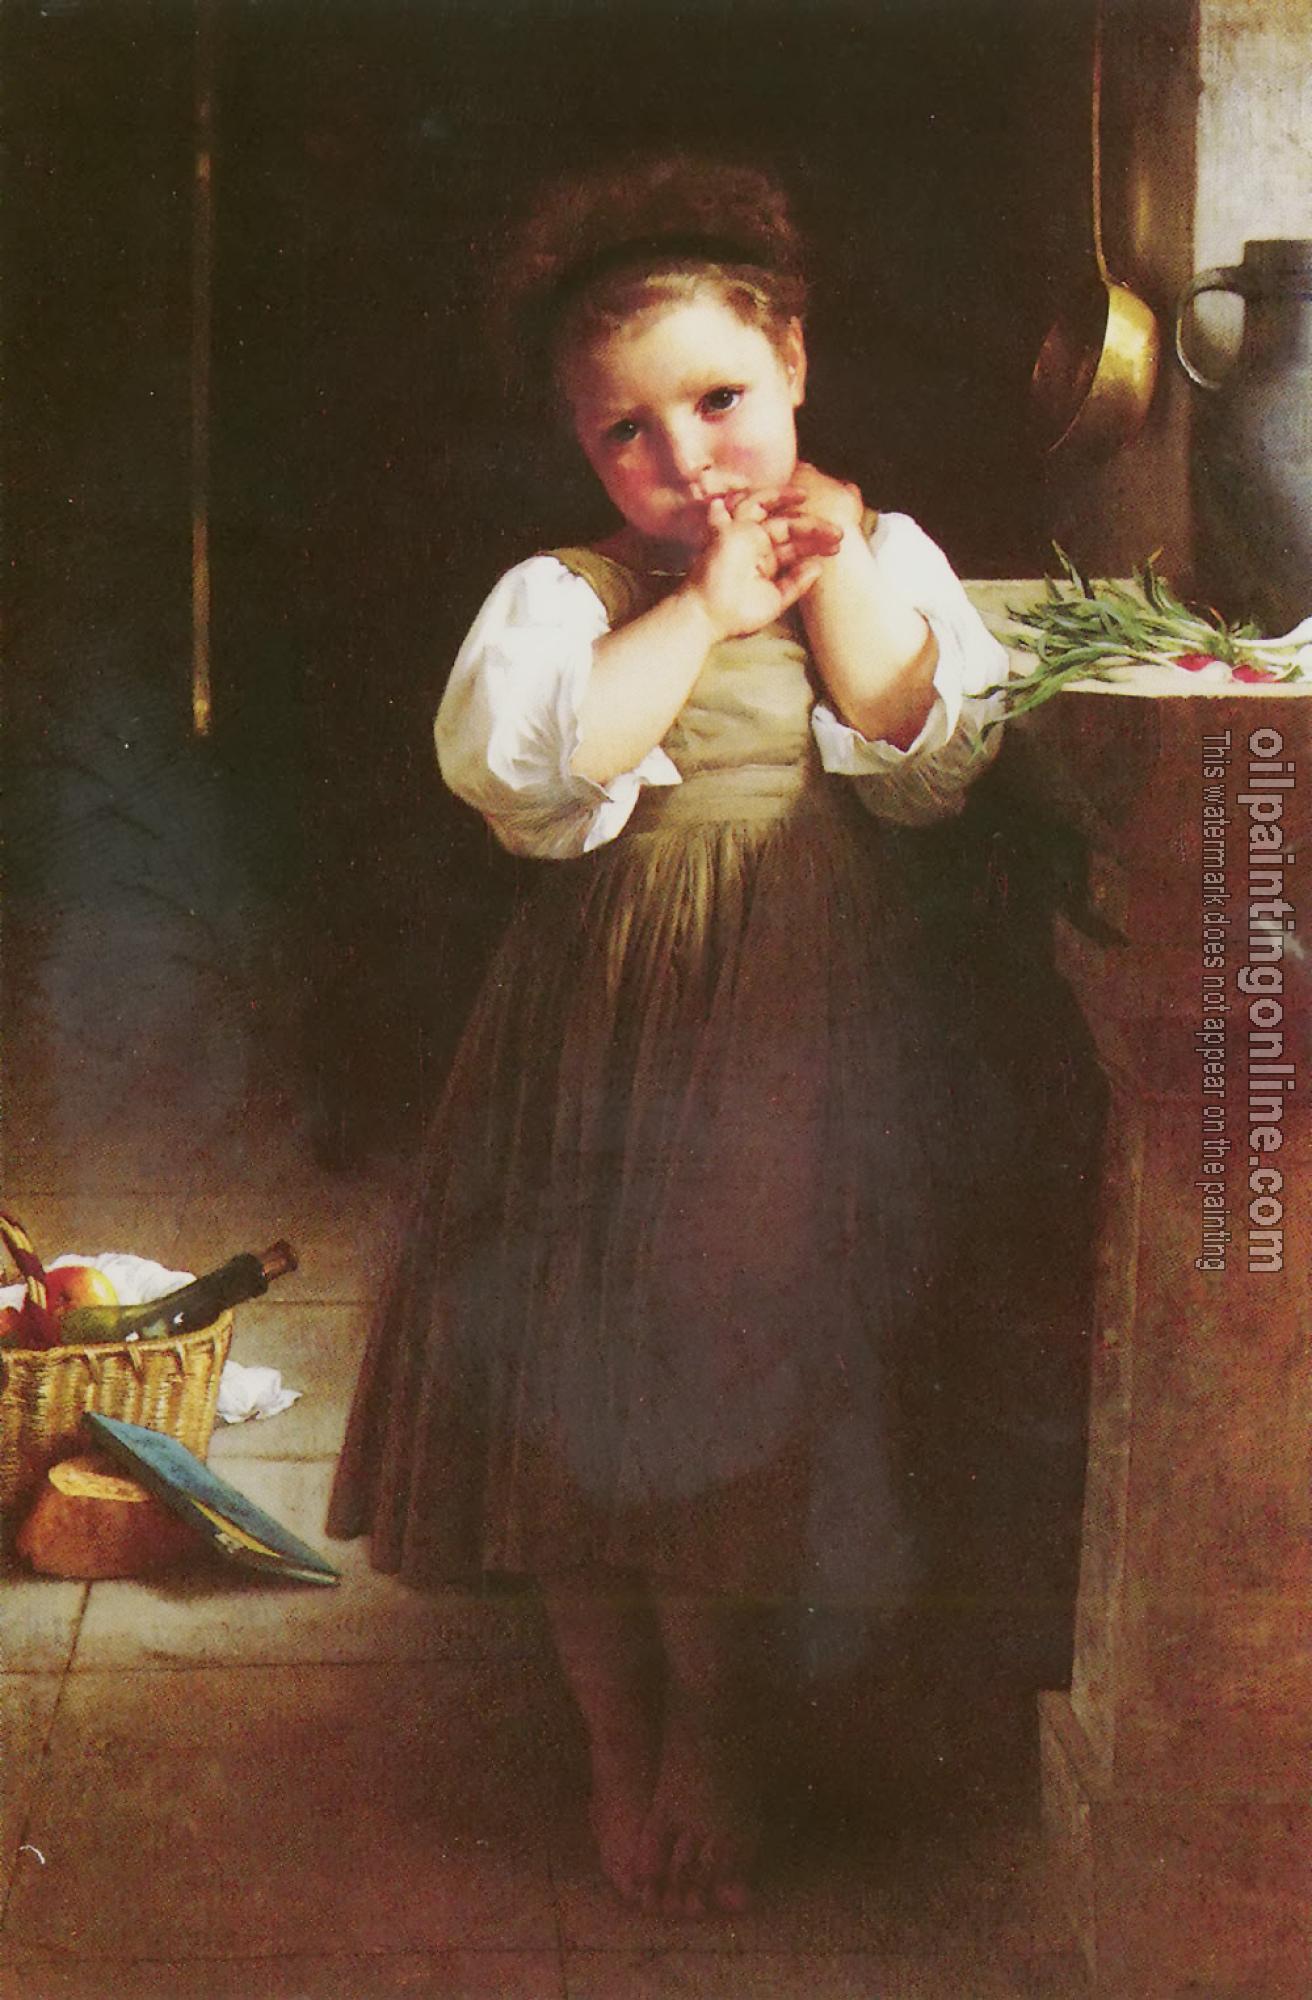 Bouguereau, William-Adolphe - Petite boudeuse( The Little Sulk)